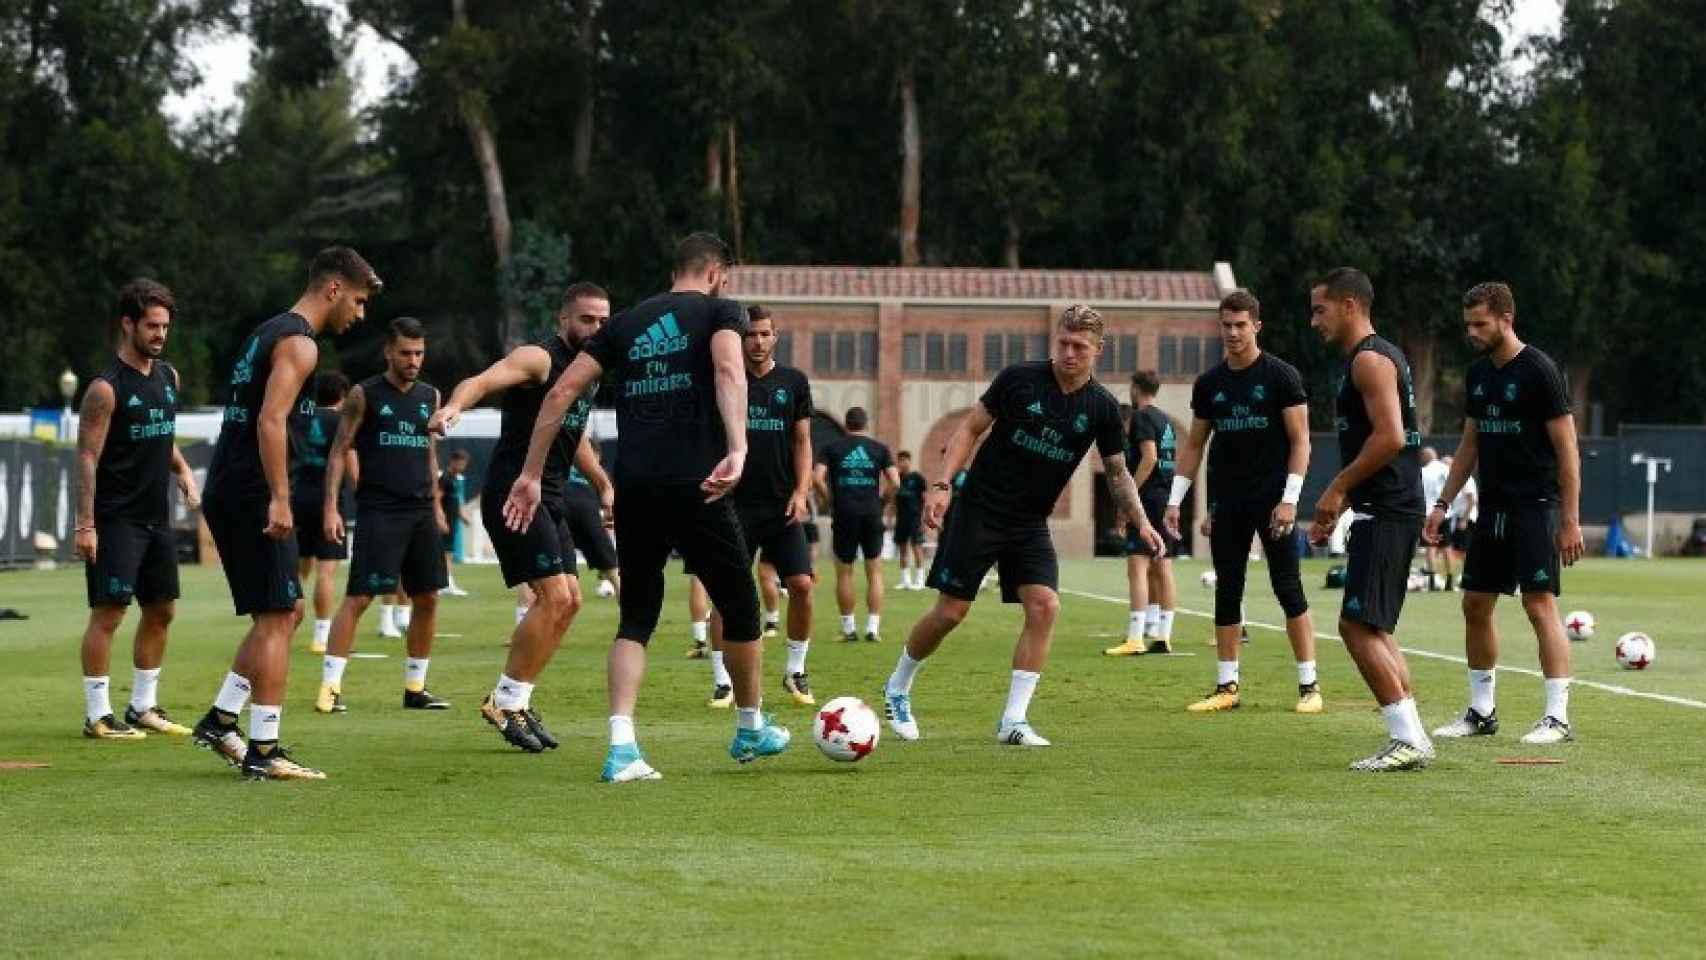 Jugadores del Real Madrid durante el entrenamiento